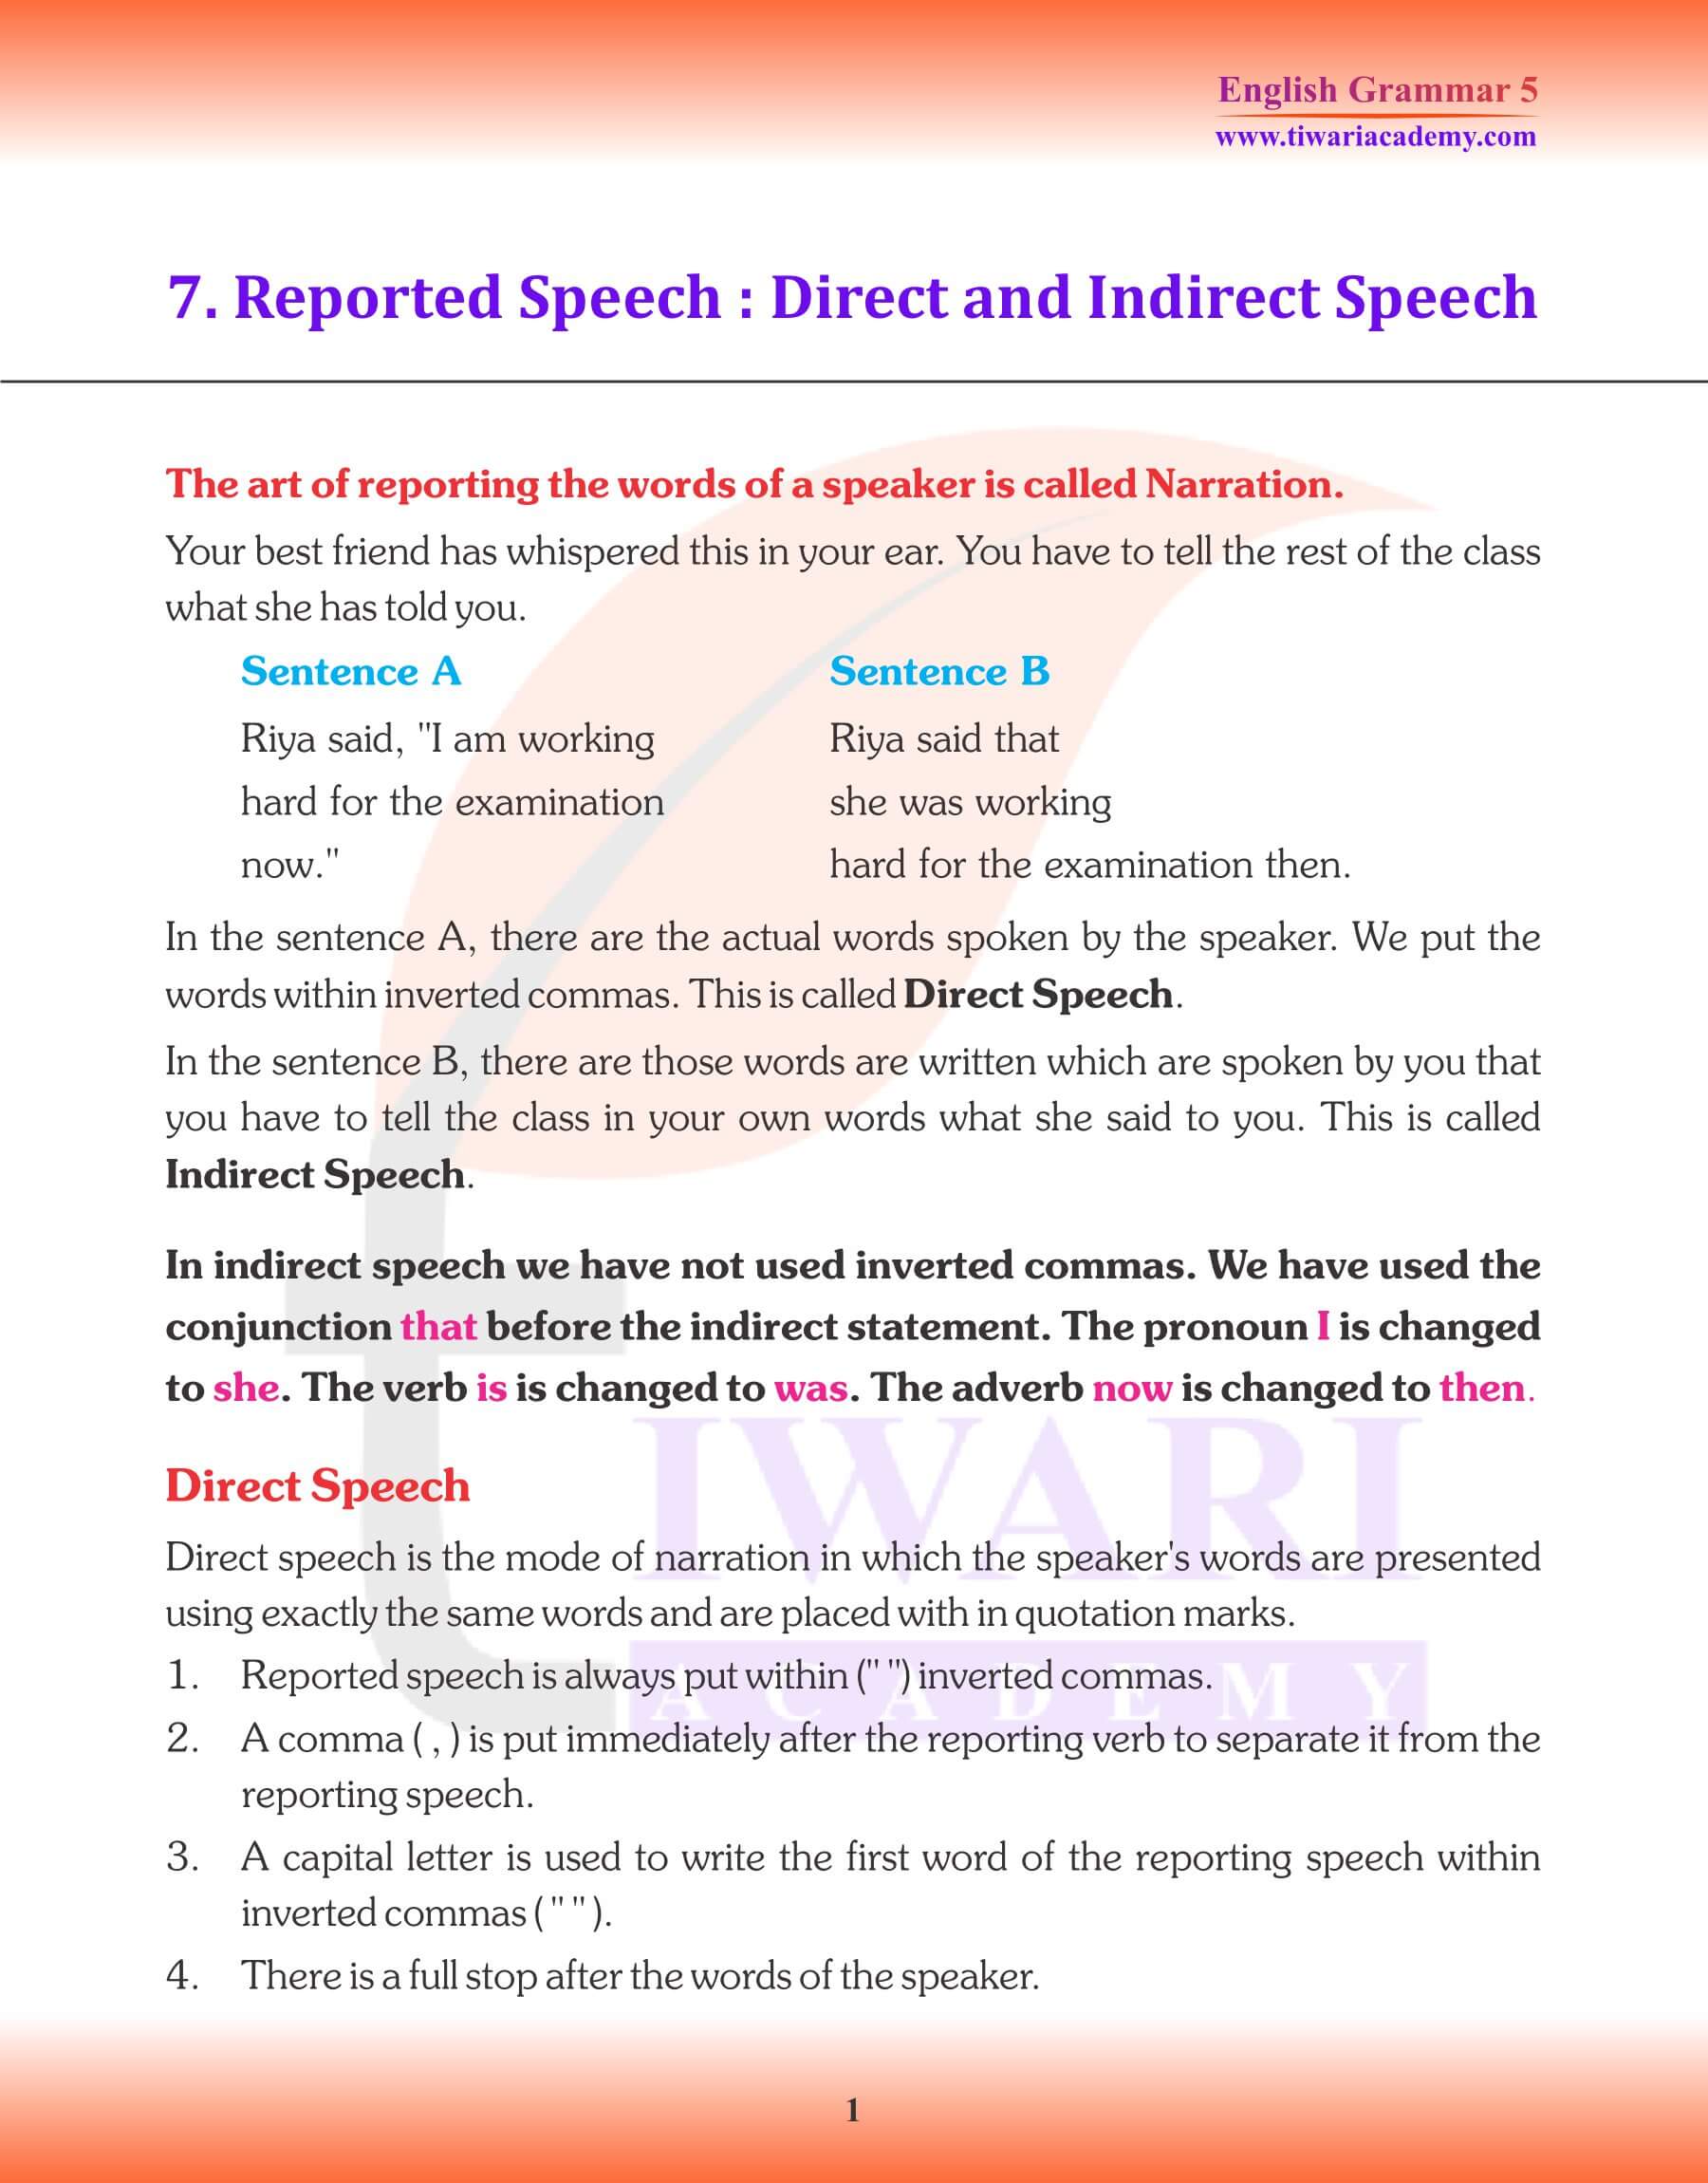 Class 5 Grammar Reported Speech